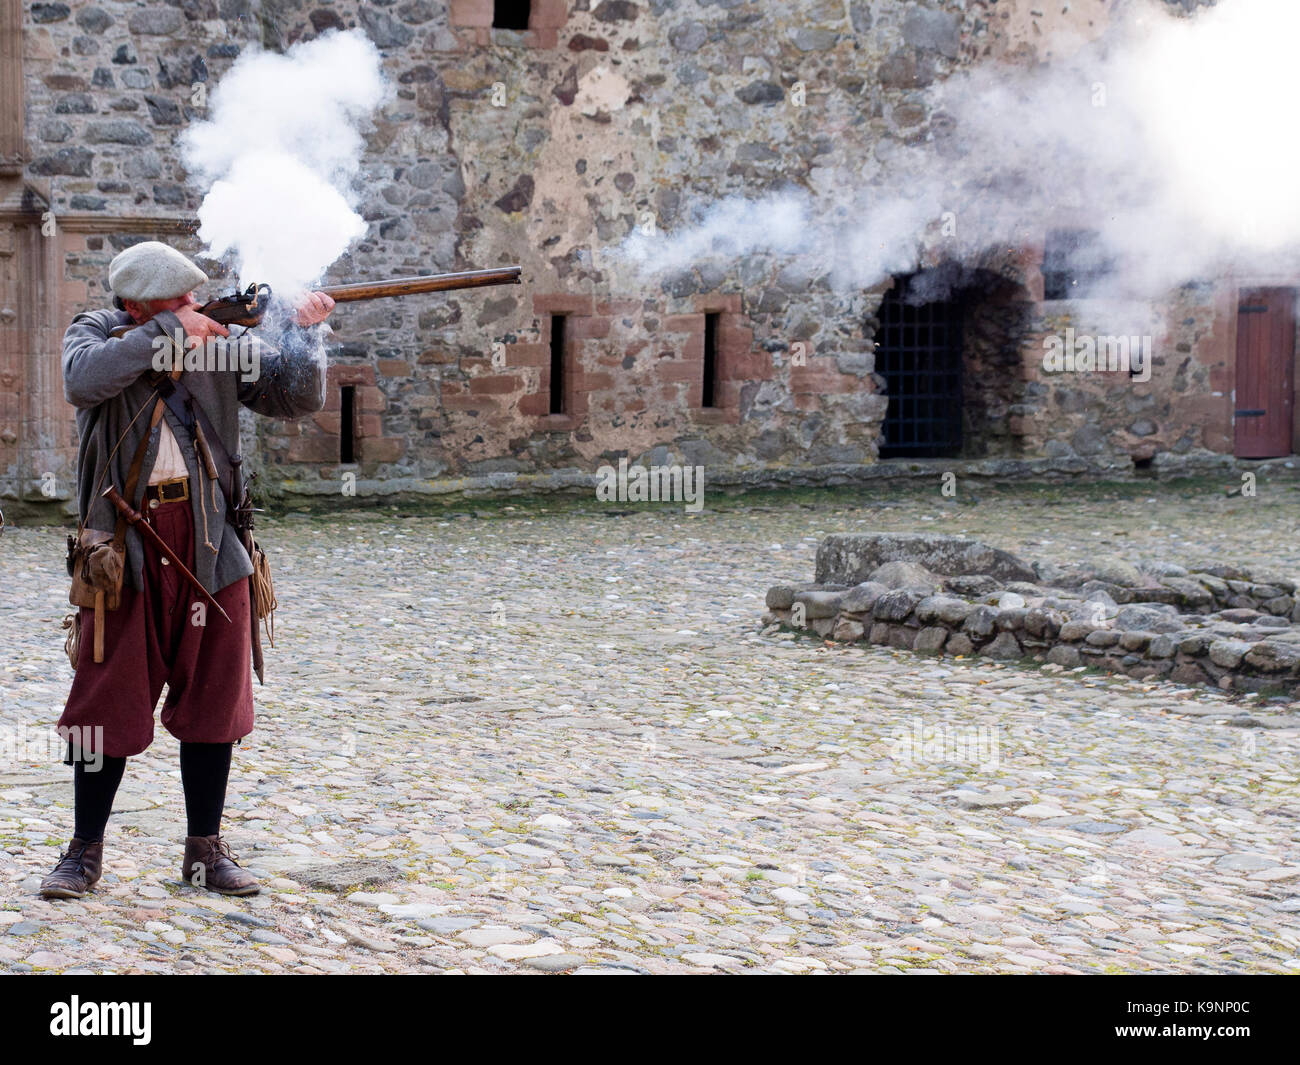 Männer feuern Musketen während einer historischen Re-enactment Veranstaltung in Huntly Castle, Schottland Stockfoto